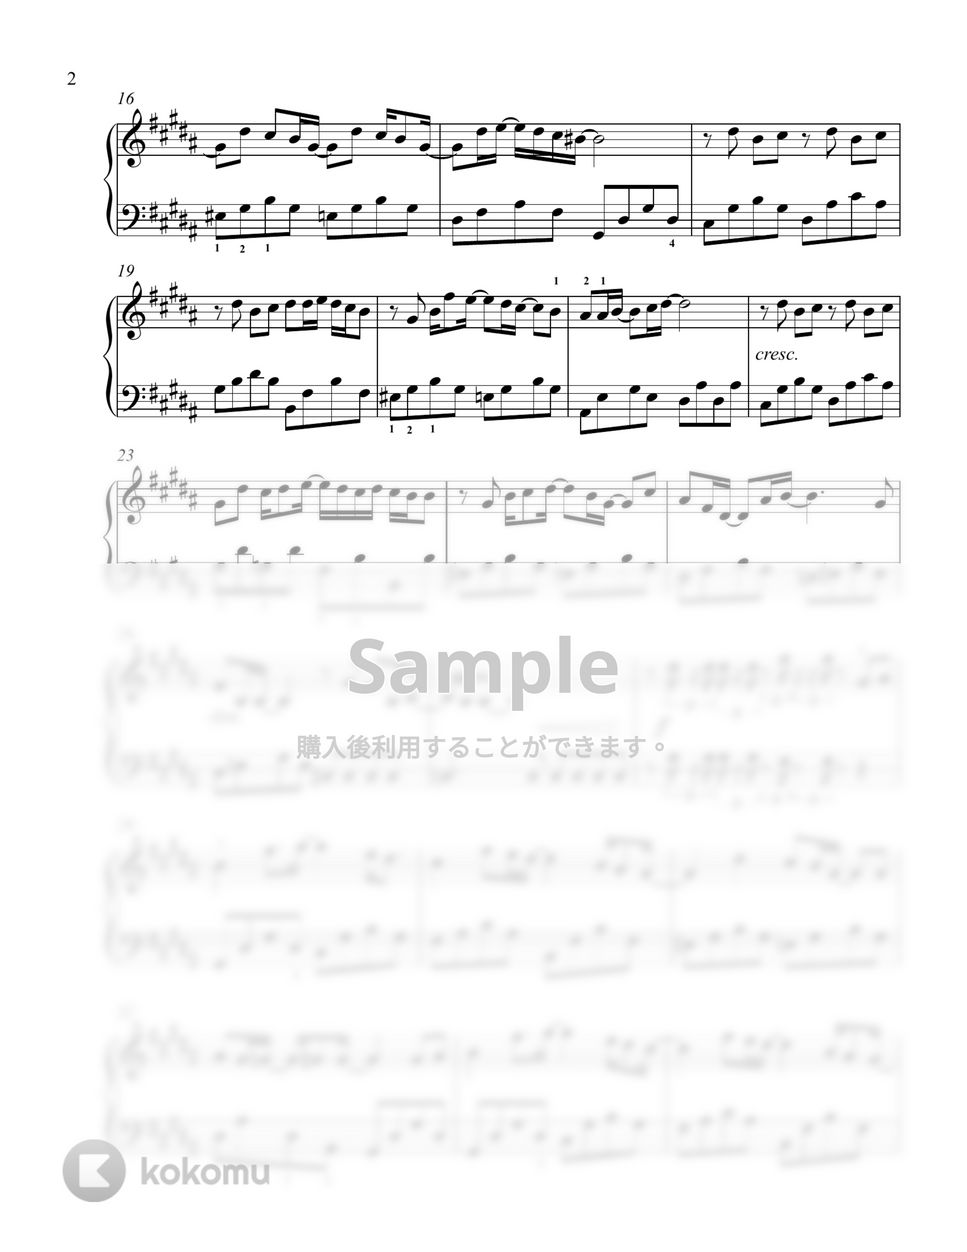 米津玄師 - 感電(ソロ初級〜中級) by ハルゴナのピアノ部屋